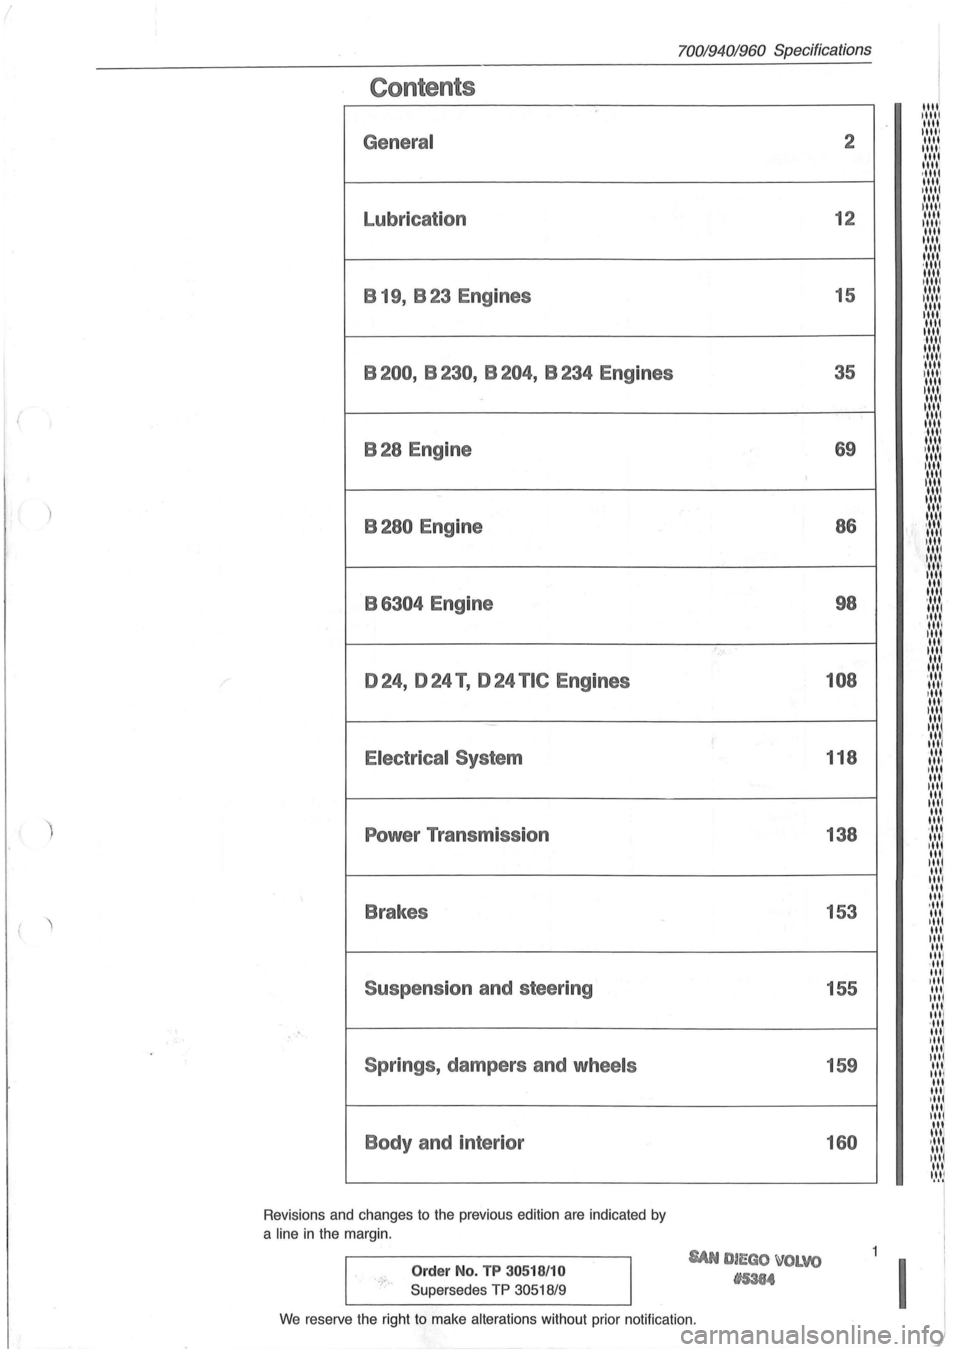 VOLVO 940 1982  Service Repair Manual ( 
) 
Contents 
General 
Lubrication B  19,  B 23  Engines 
B200,  B230, B204, B234 Engines 
B28 Engine 
B280 Engine 
B 
6304 Engine 
024, 024 T , 024 TIC Engines 
Electrical  System 
Power Transmissi